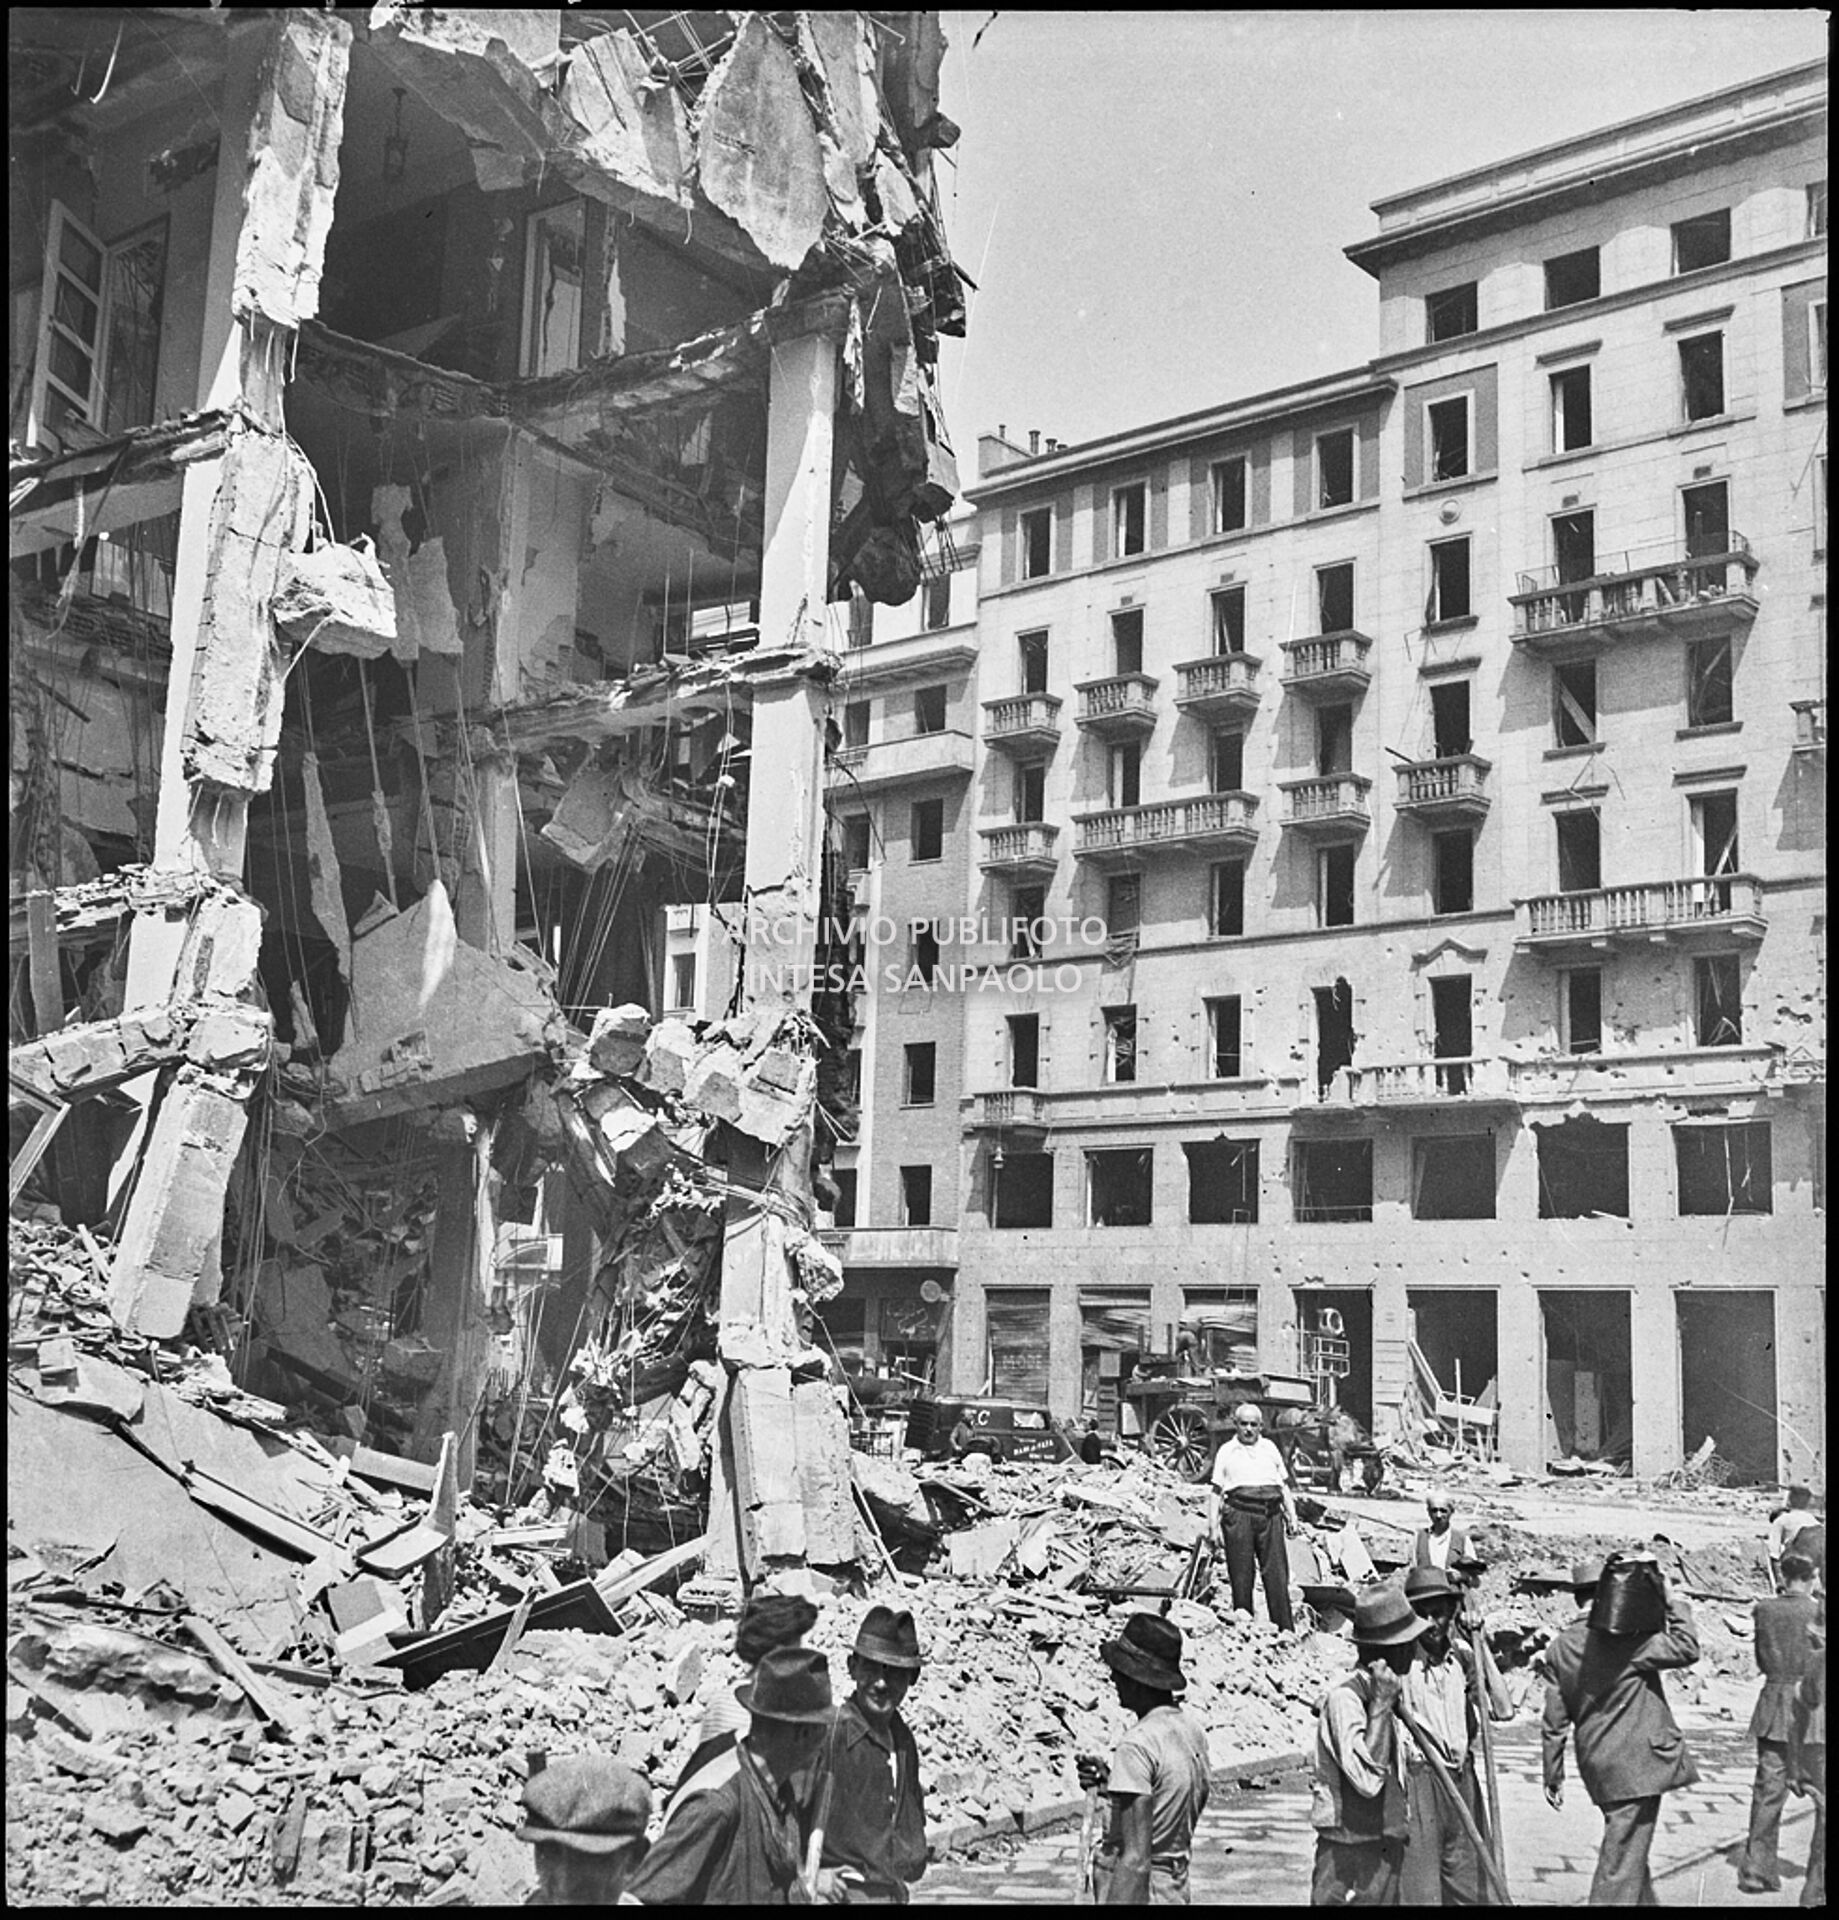 Passanti in via Torino all'angolo con piazza Santa Maria Beltrade, a Milano, davanti a un edificio sventrato dai bombardamenti